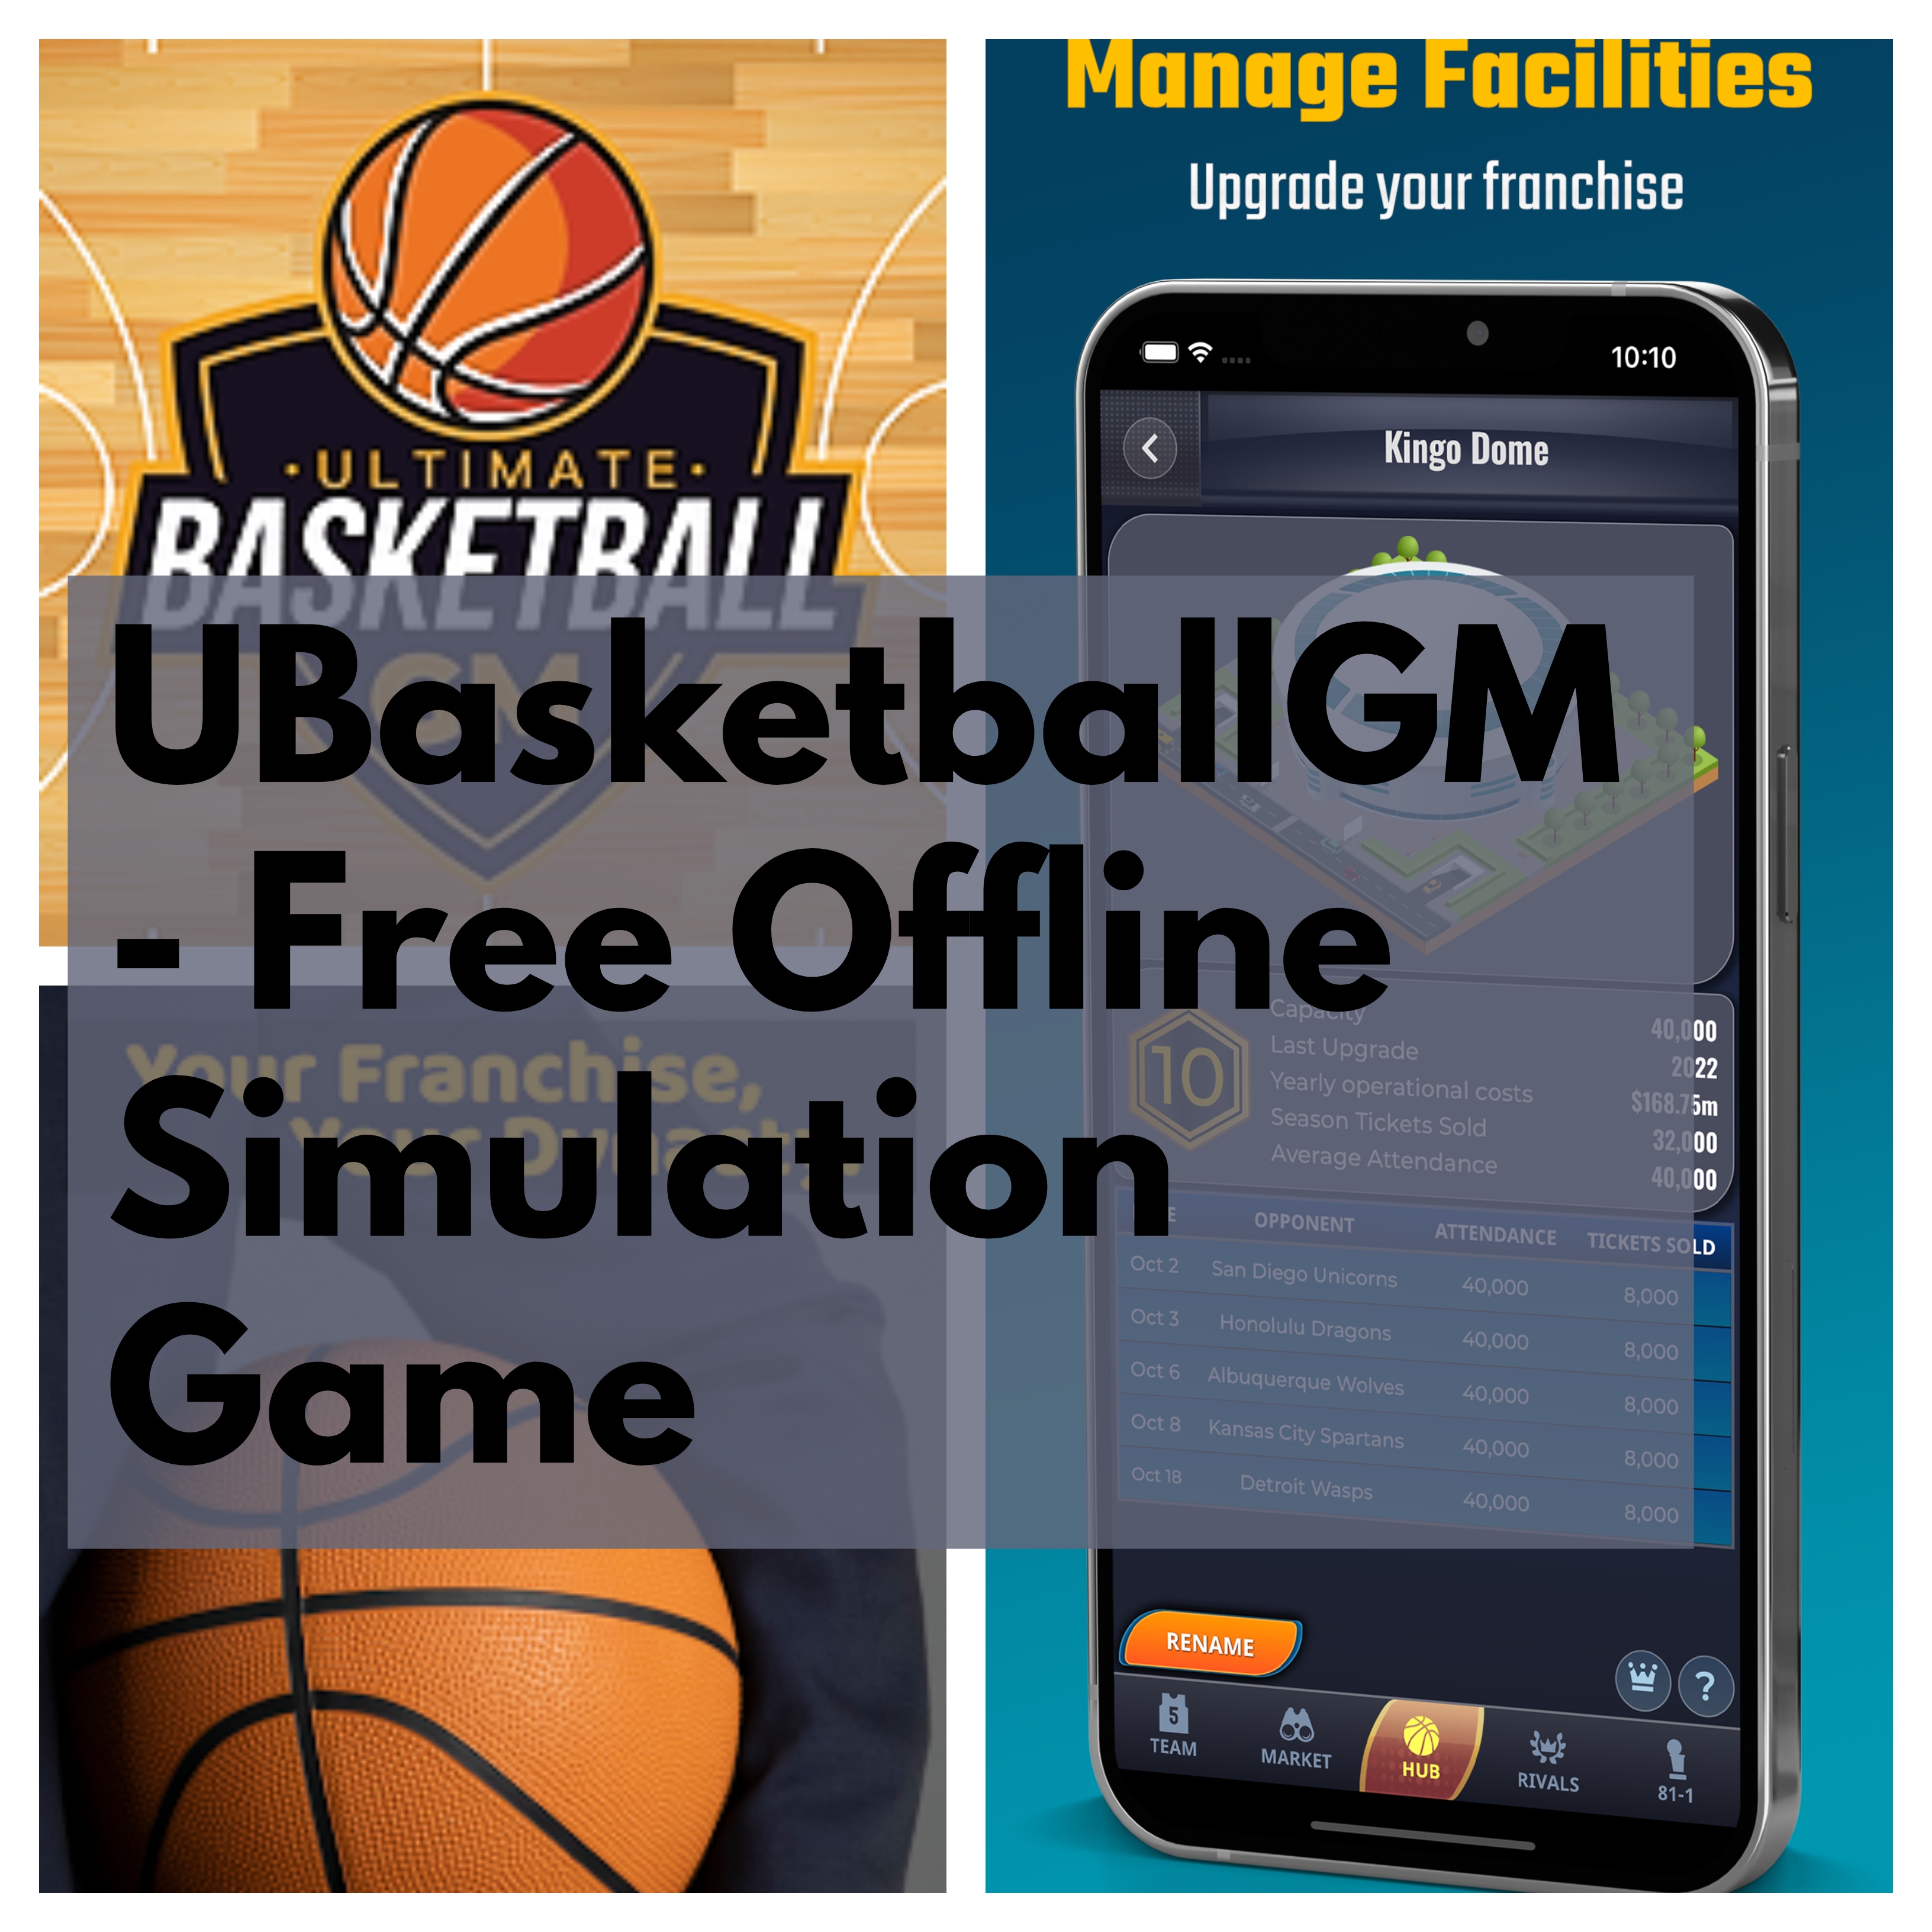 UBasketballGM - A Free Offline Simulation Game